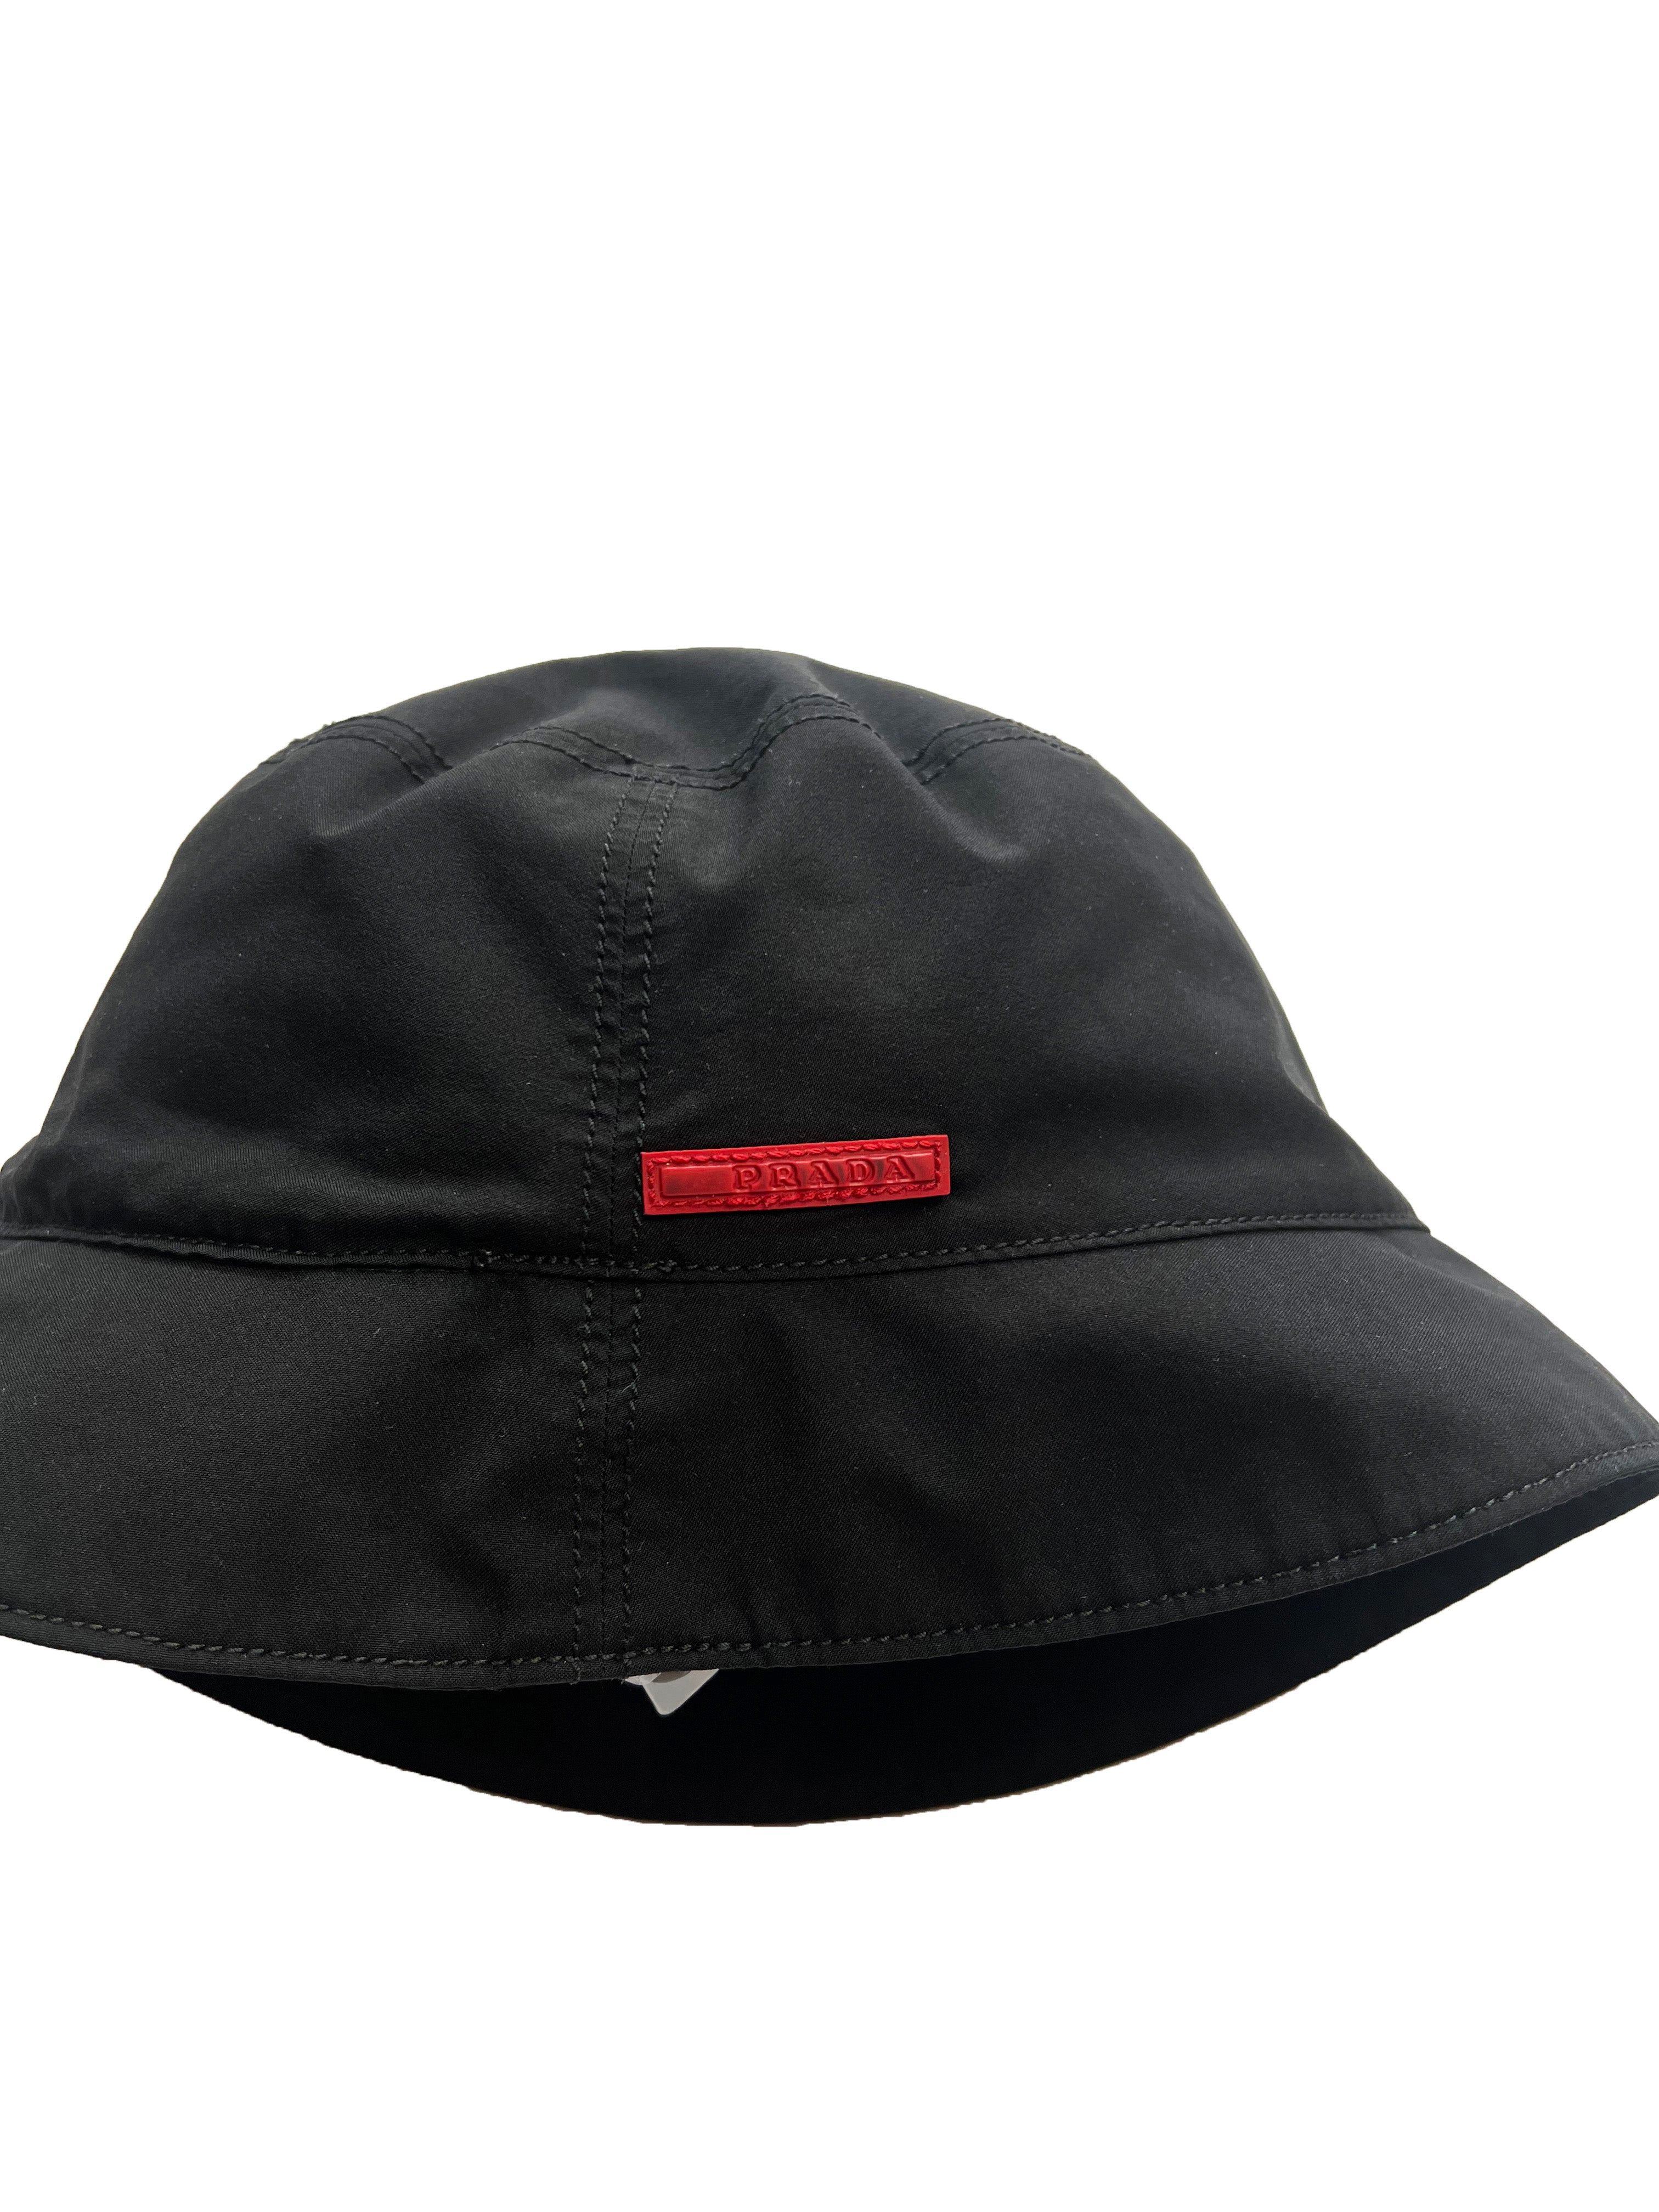 Prada Sport Nylon Black Bucket Hat 00's